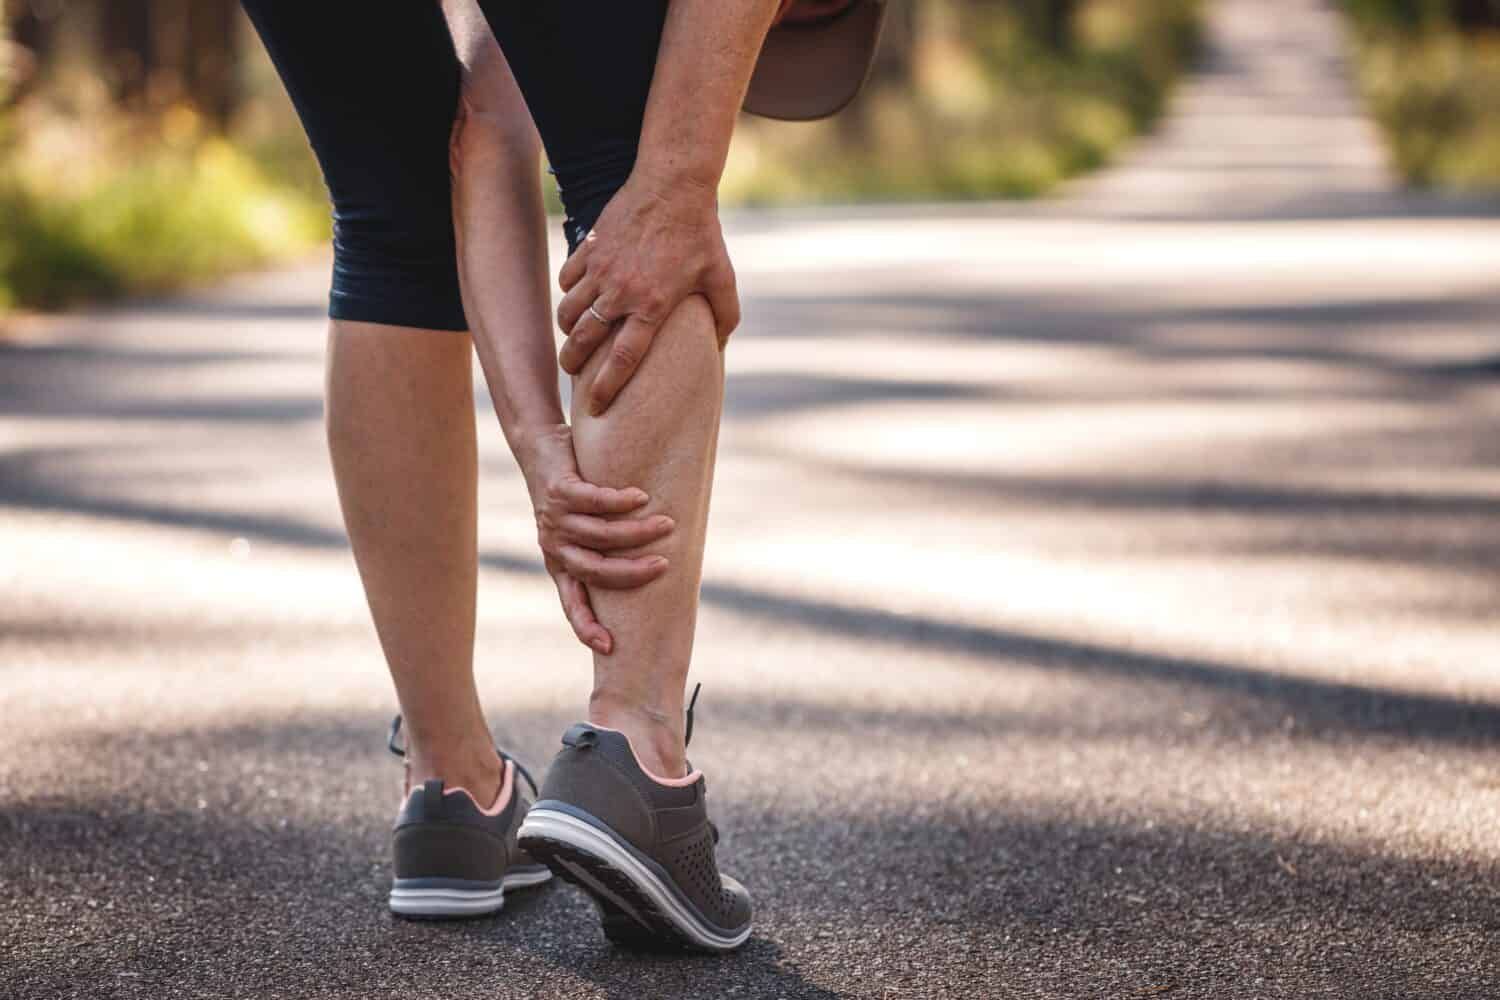 Donna che sente dolore alle gambe durante il jogging.  Crampi muscolari al polpaccio.  Sottovalutare l'esercizio di riscaldamento prima di correre